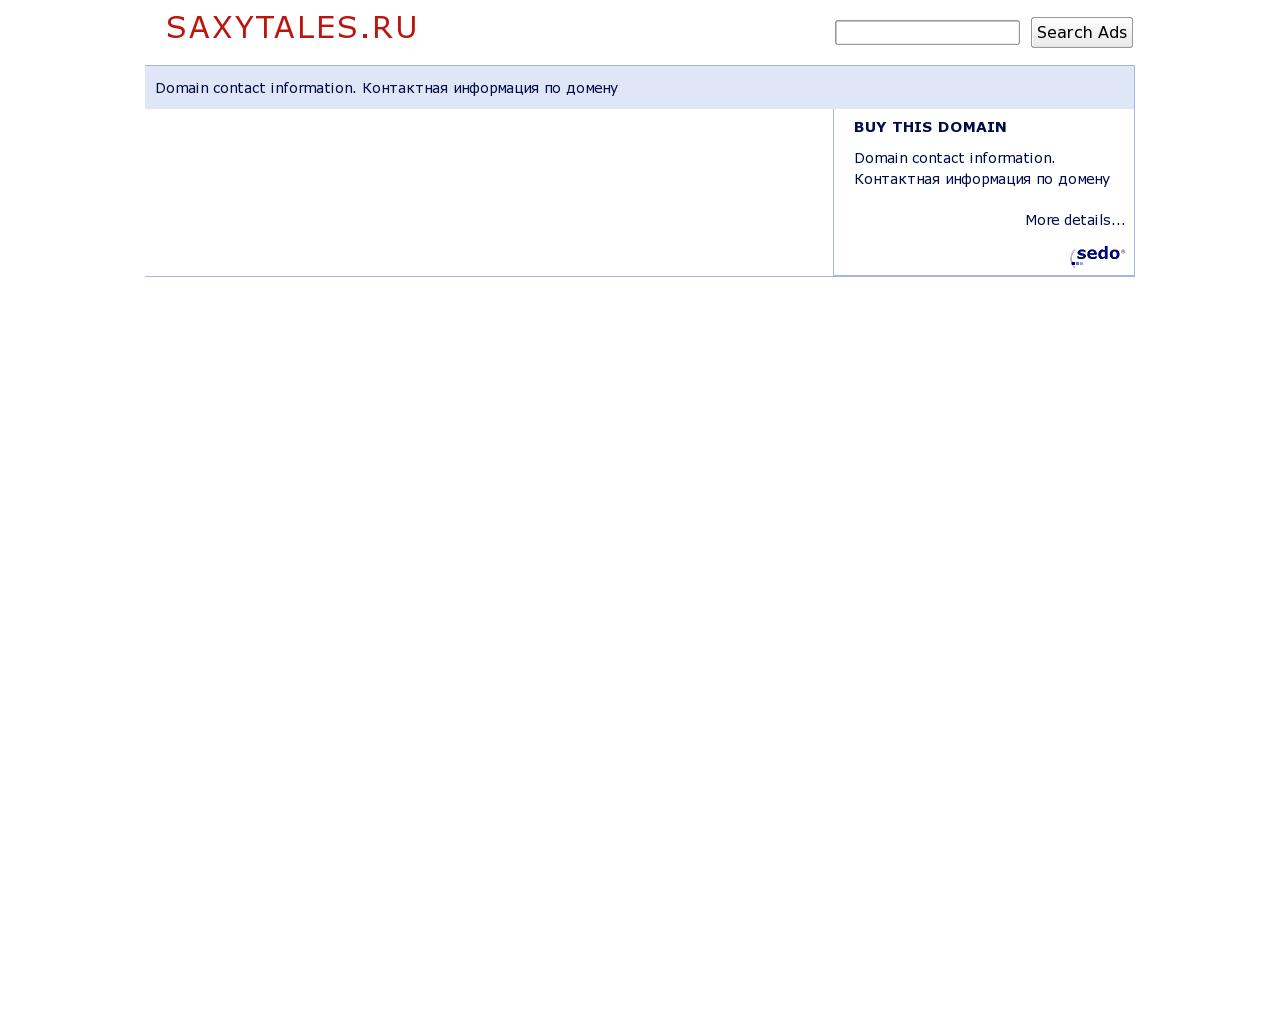 Изображение сайта saxytales.ru в разрешении 1280x1024